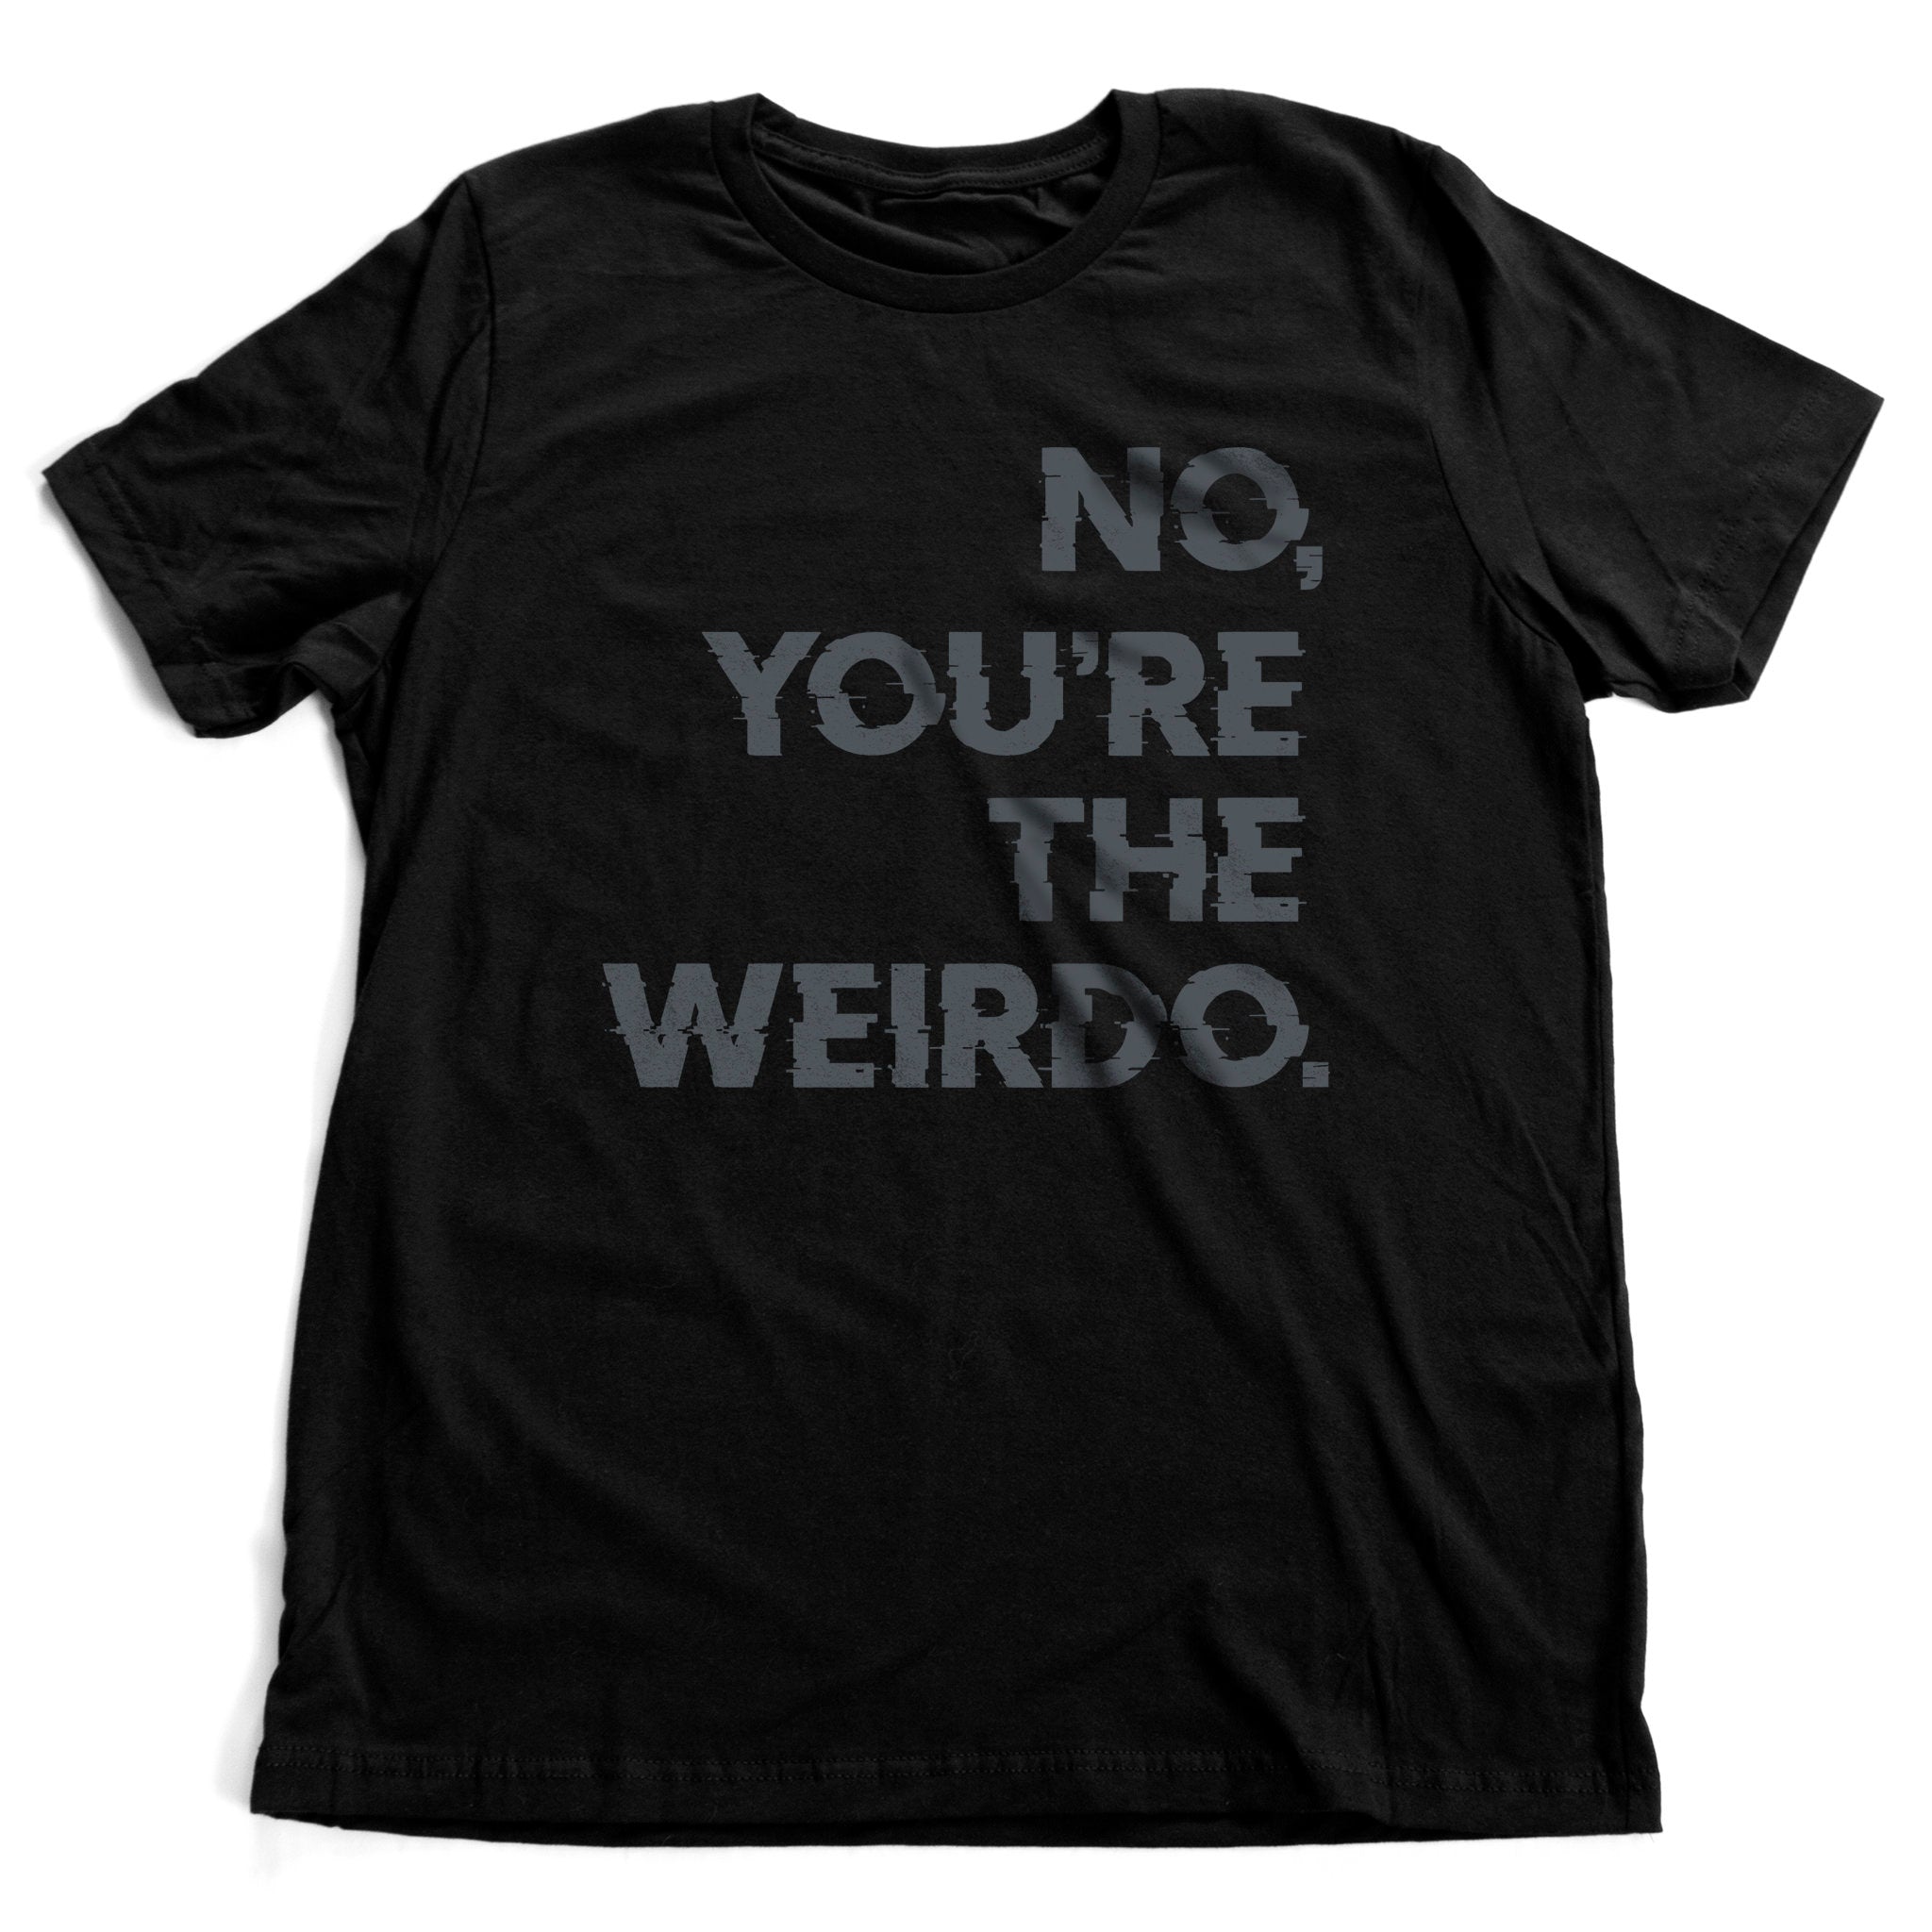 You're the Weirdo - premium unisex t-shirt